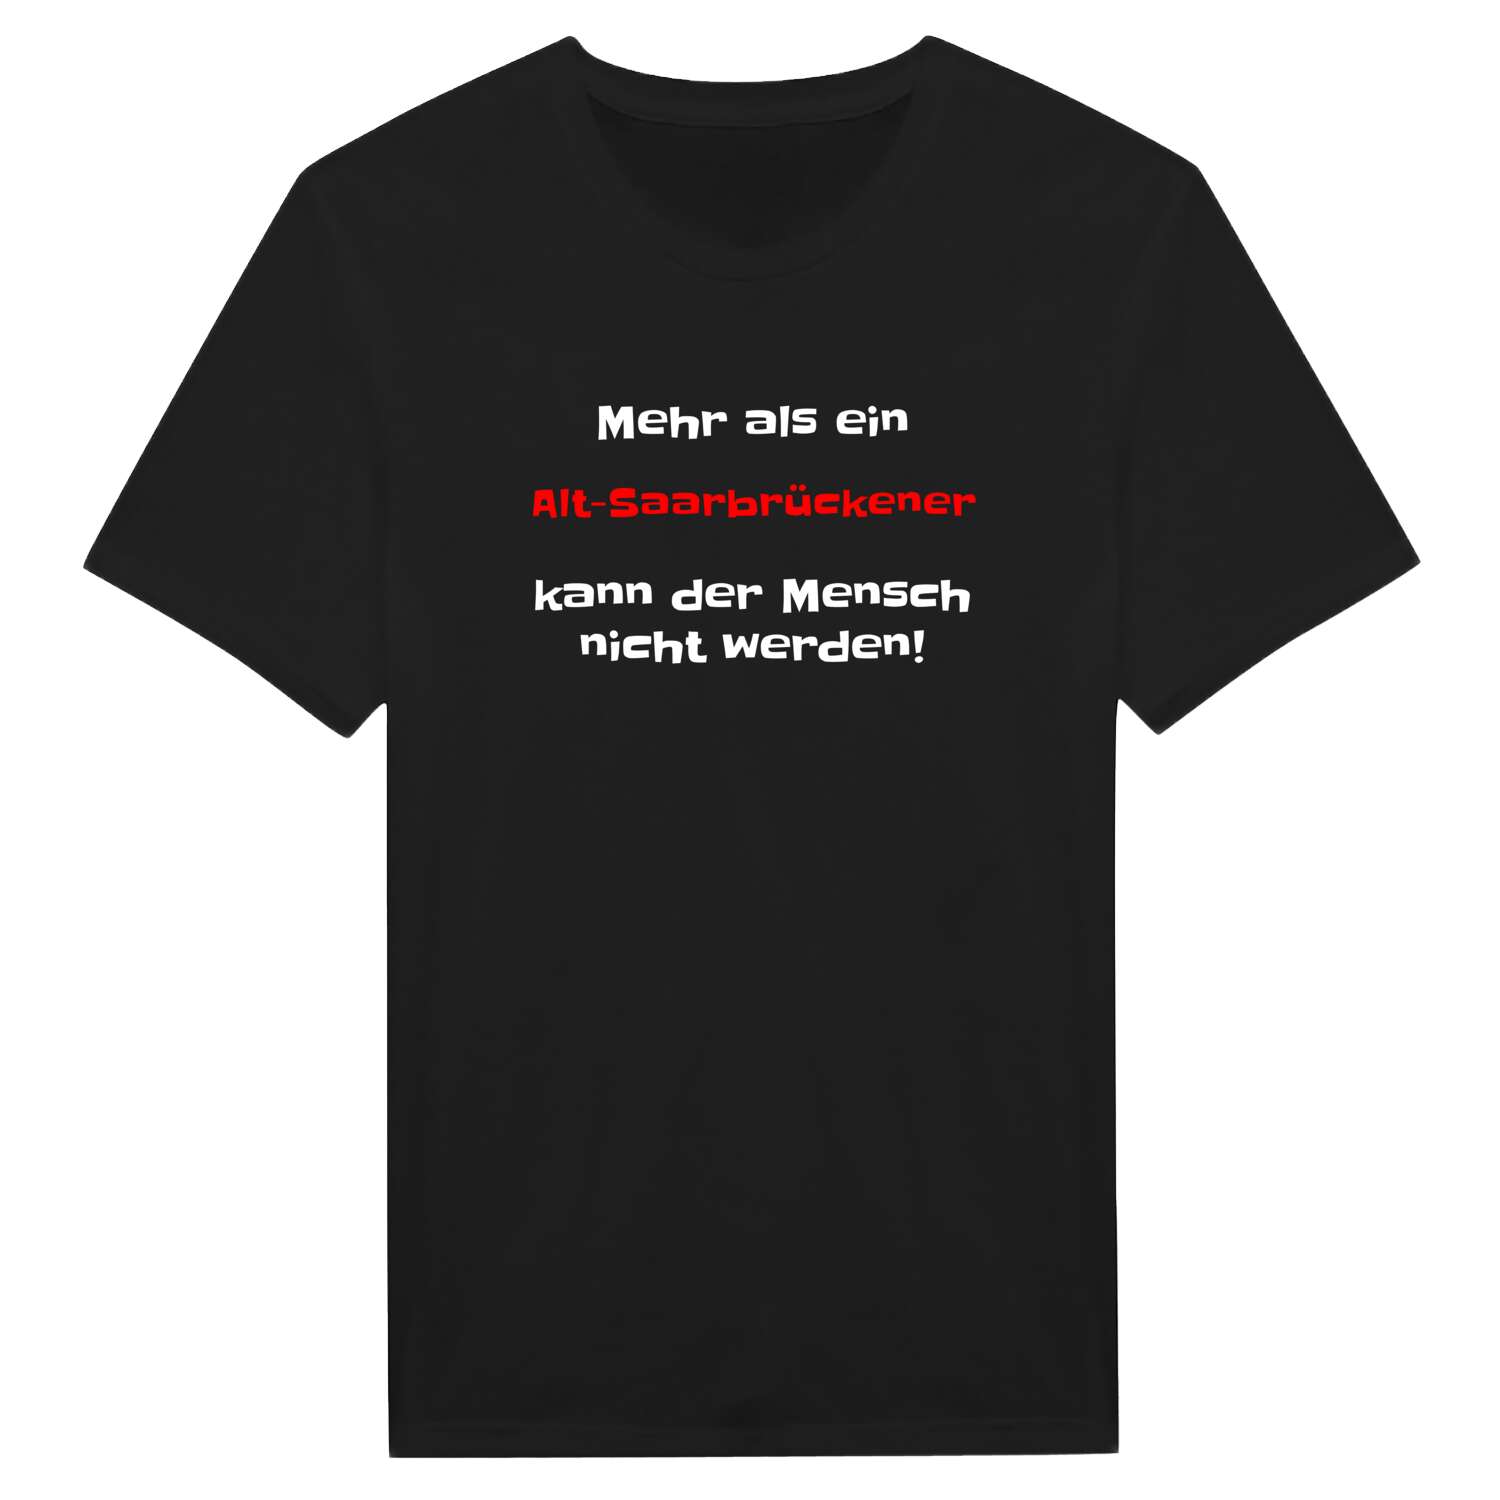 Alt-Saarbrücken T-Shirt »Mehr als ein«